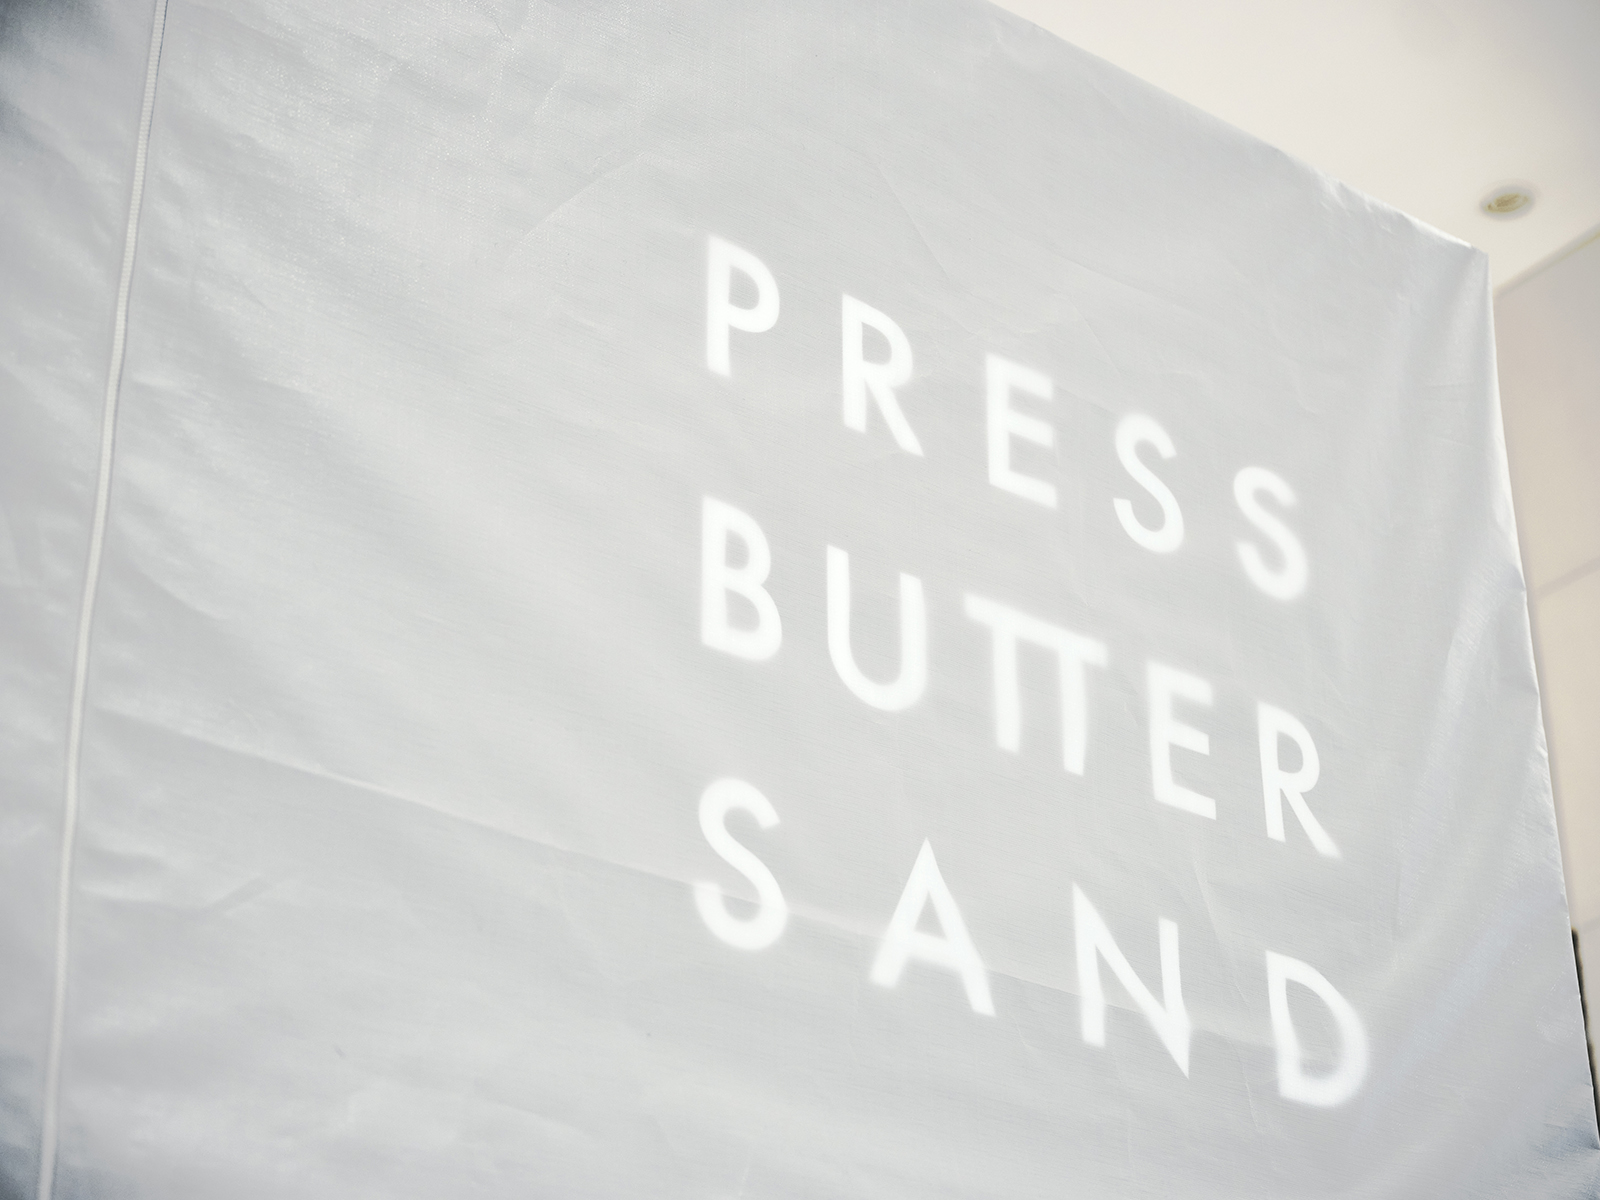 PRESS BUTTER SAND Pop-up Store